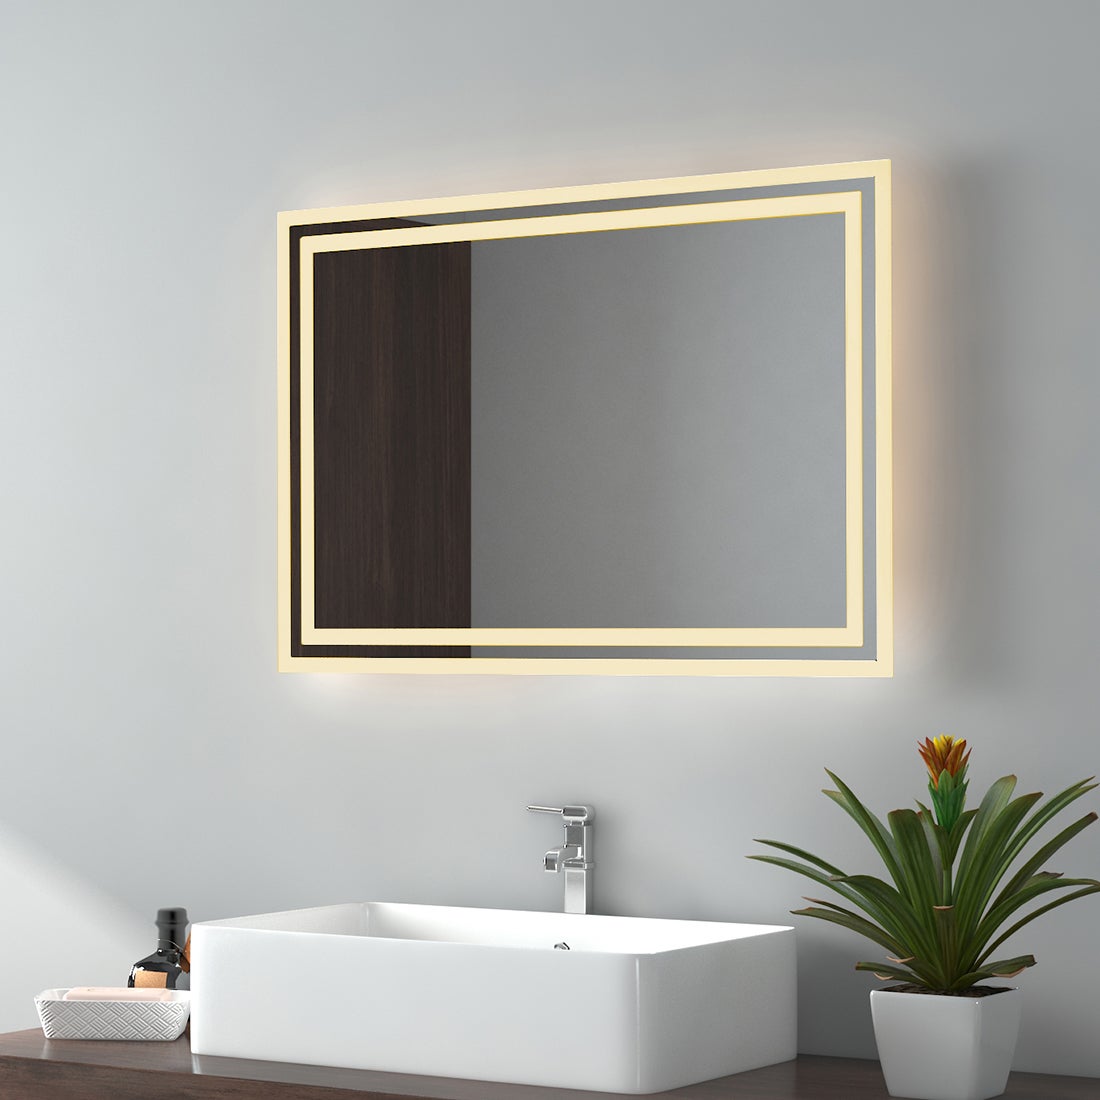 EMKE Badspiegel LED IP44 Wasserdicht Wandspiegel, 70x50cm, Warmweißes Licht